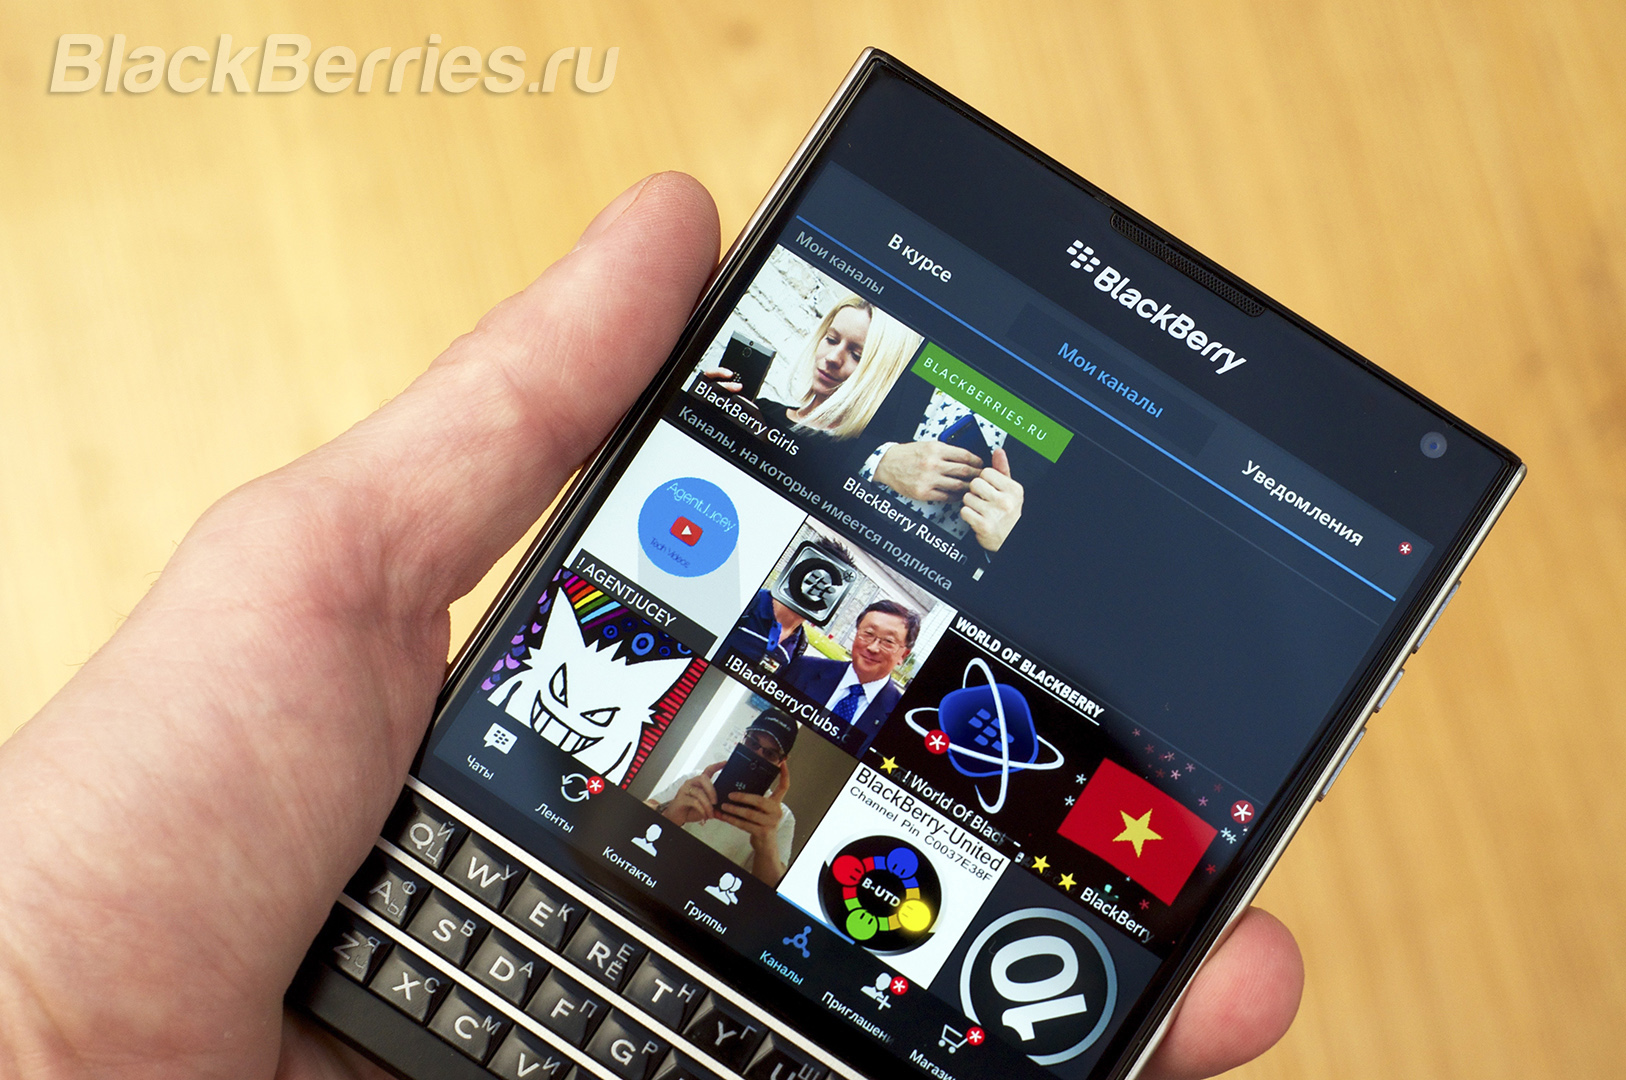 BlackBerry-Passport-BBM-Channels